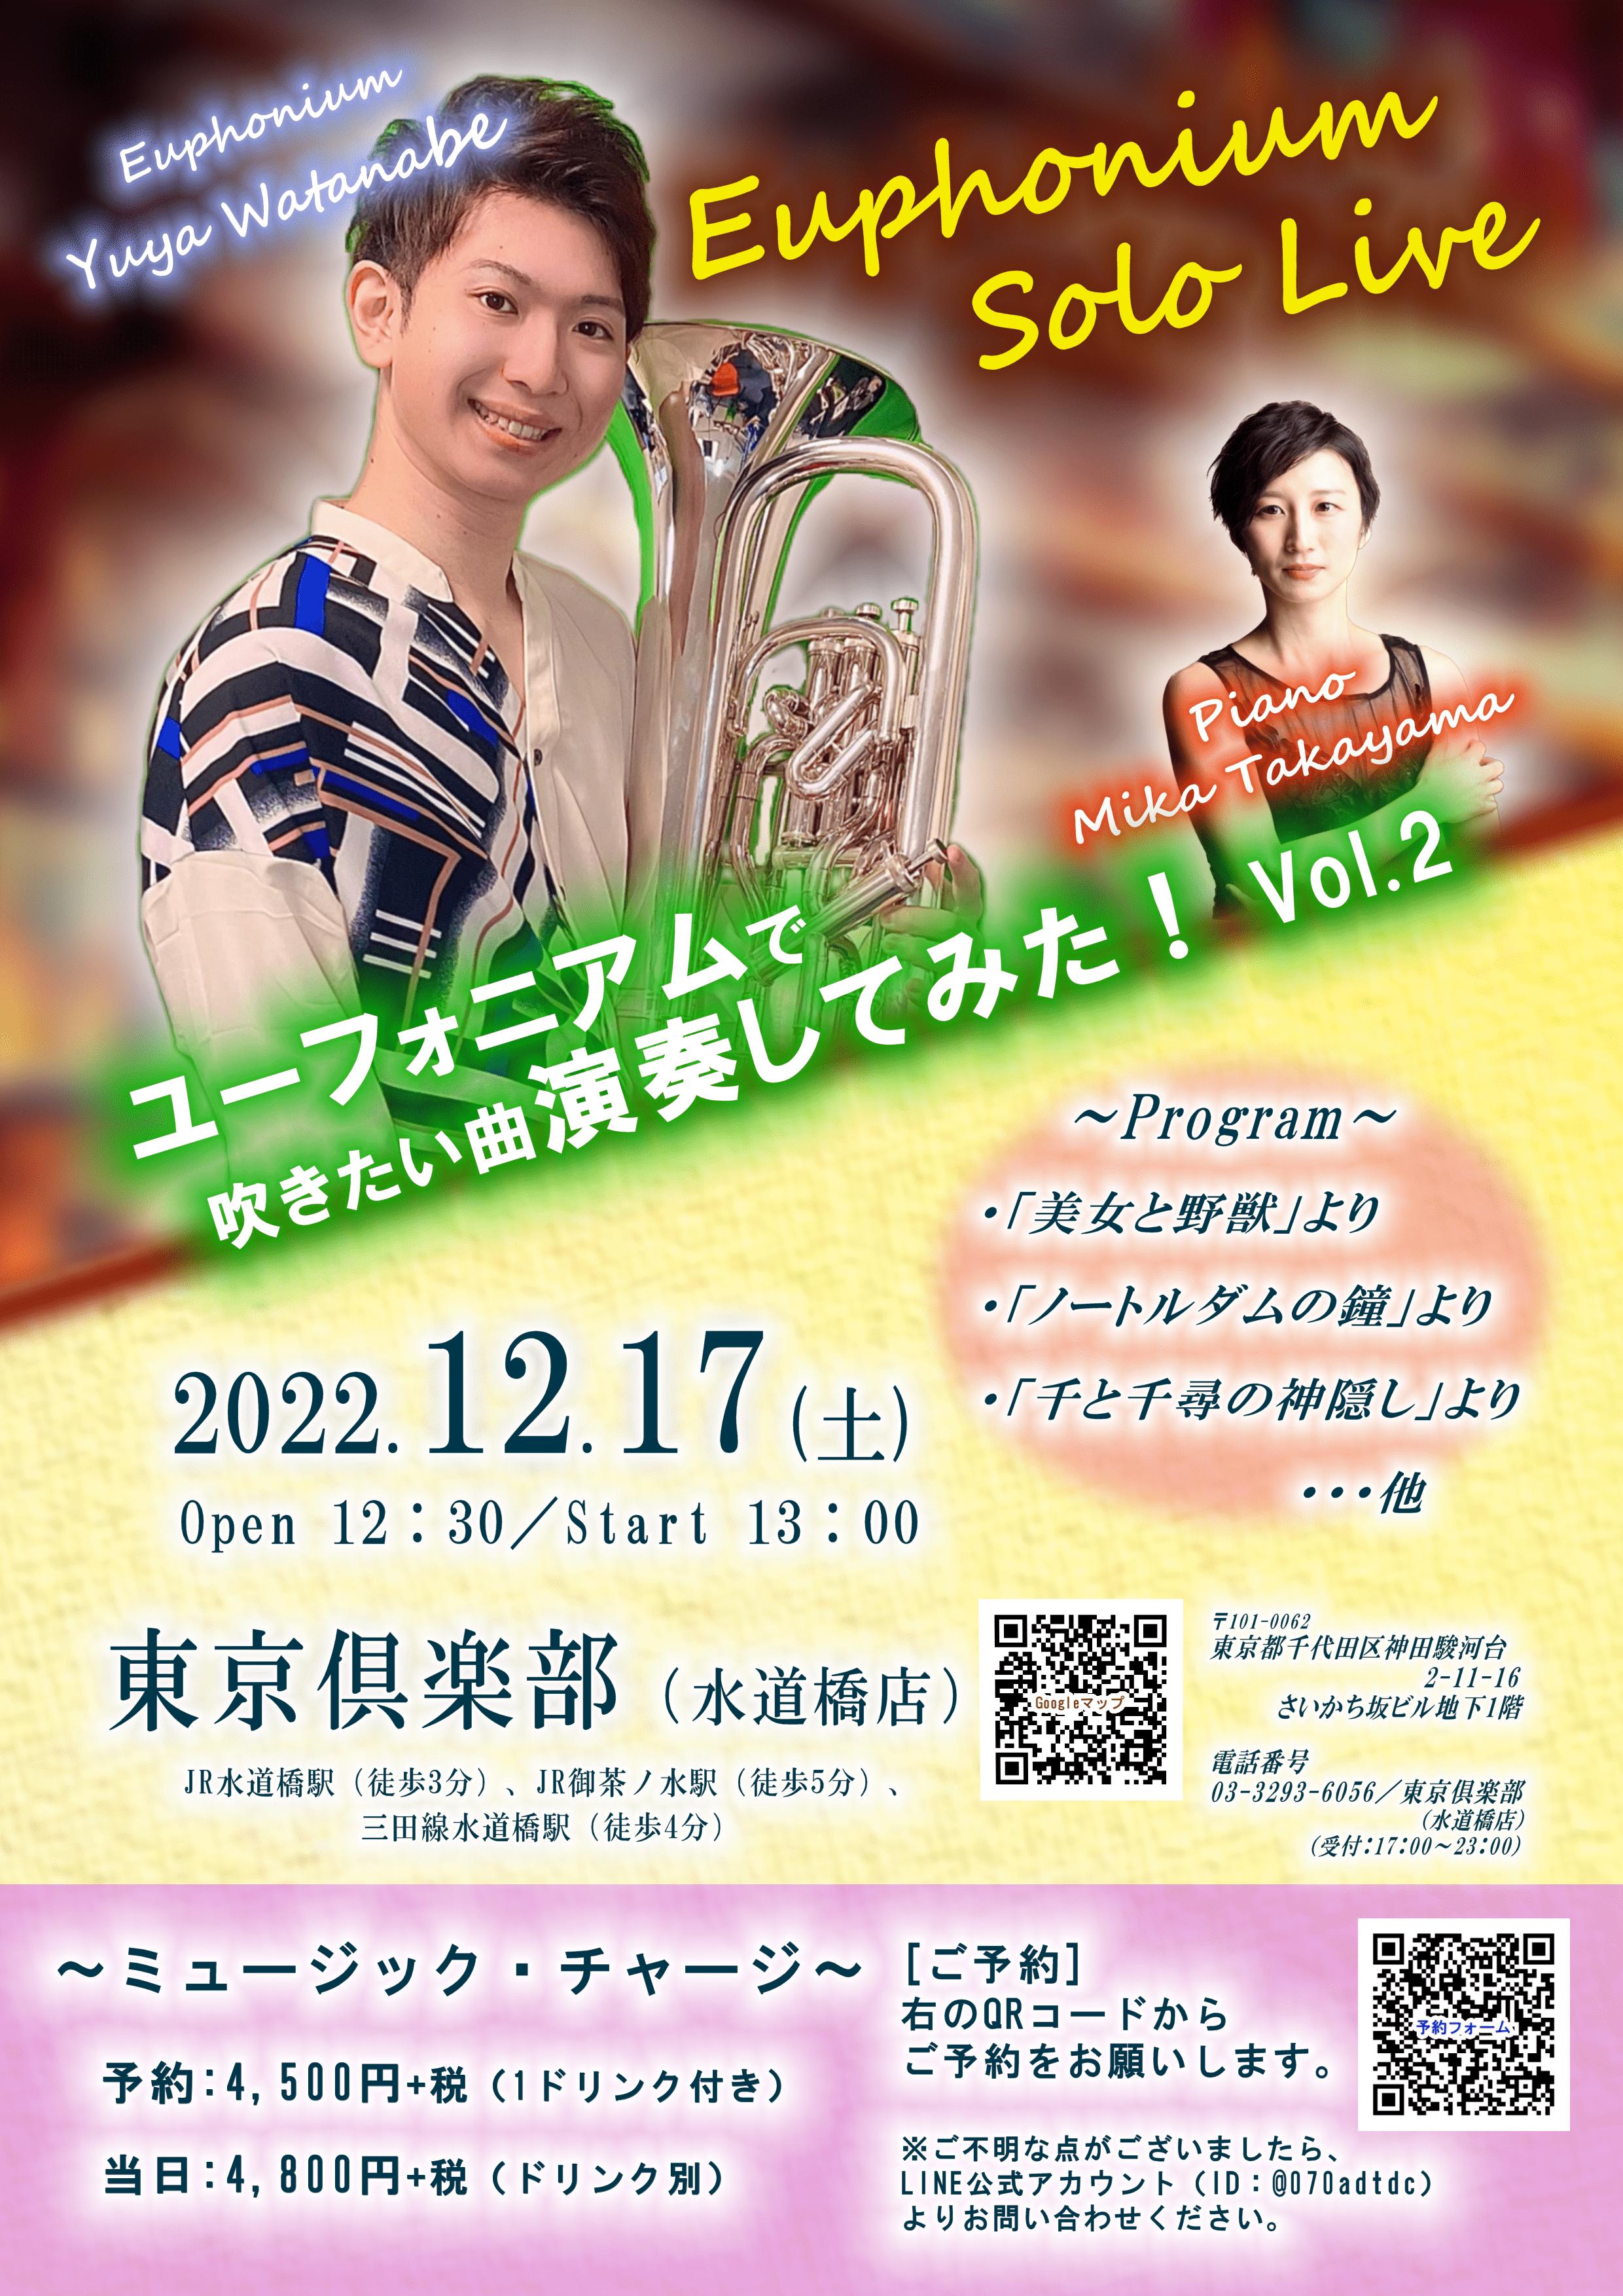 Yuya Watanabe Euphonium Solo Live